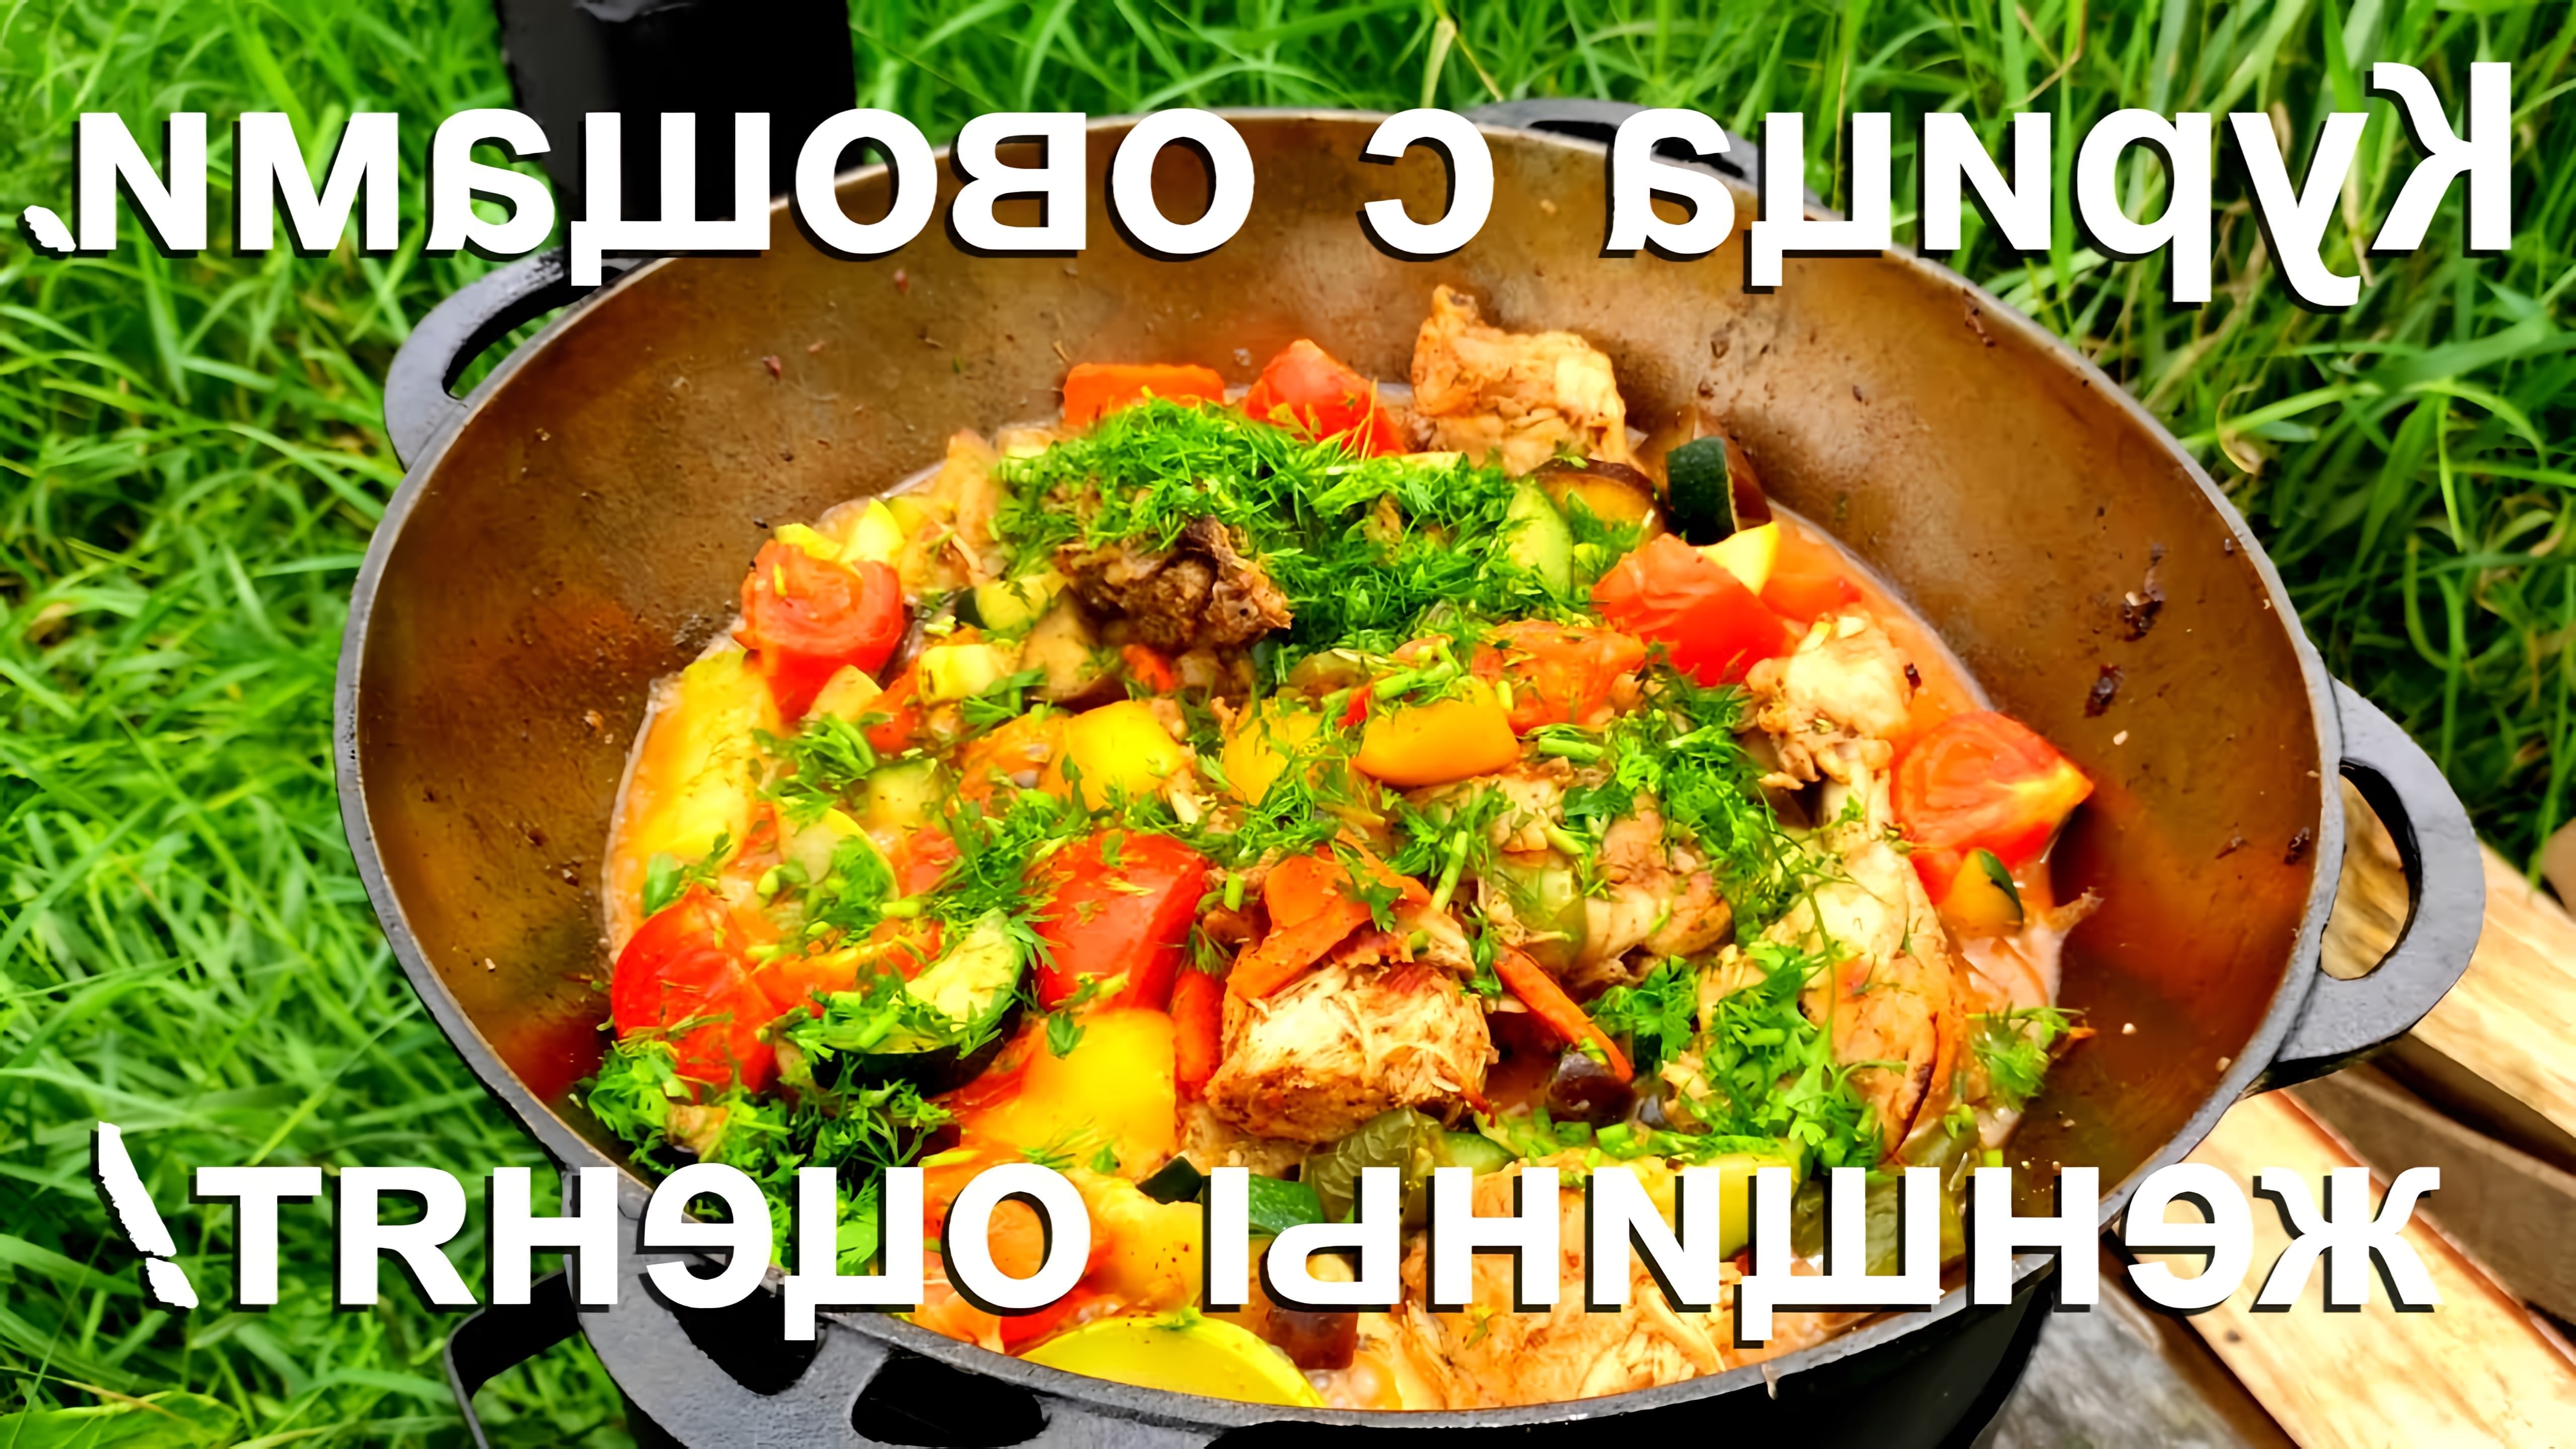 В этом видео-ролике демонстрируется приготовление вкусного и полезного блюда из курицы с овощами в казане